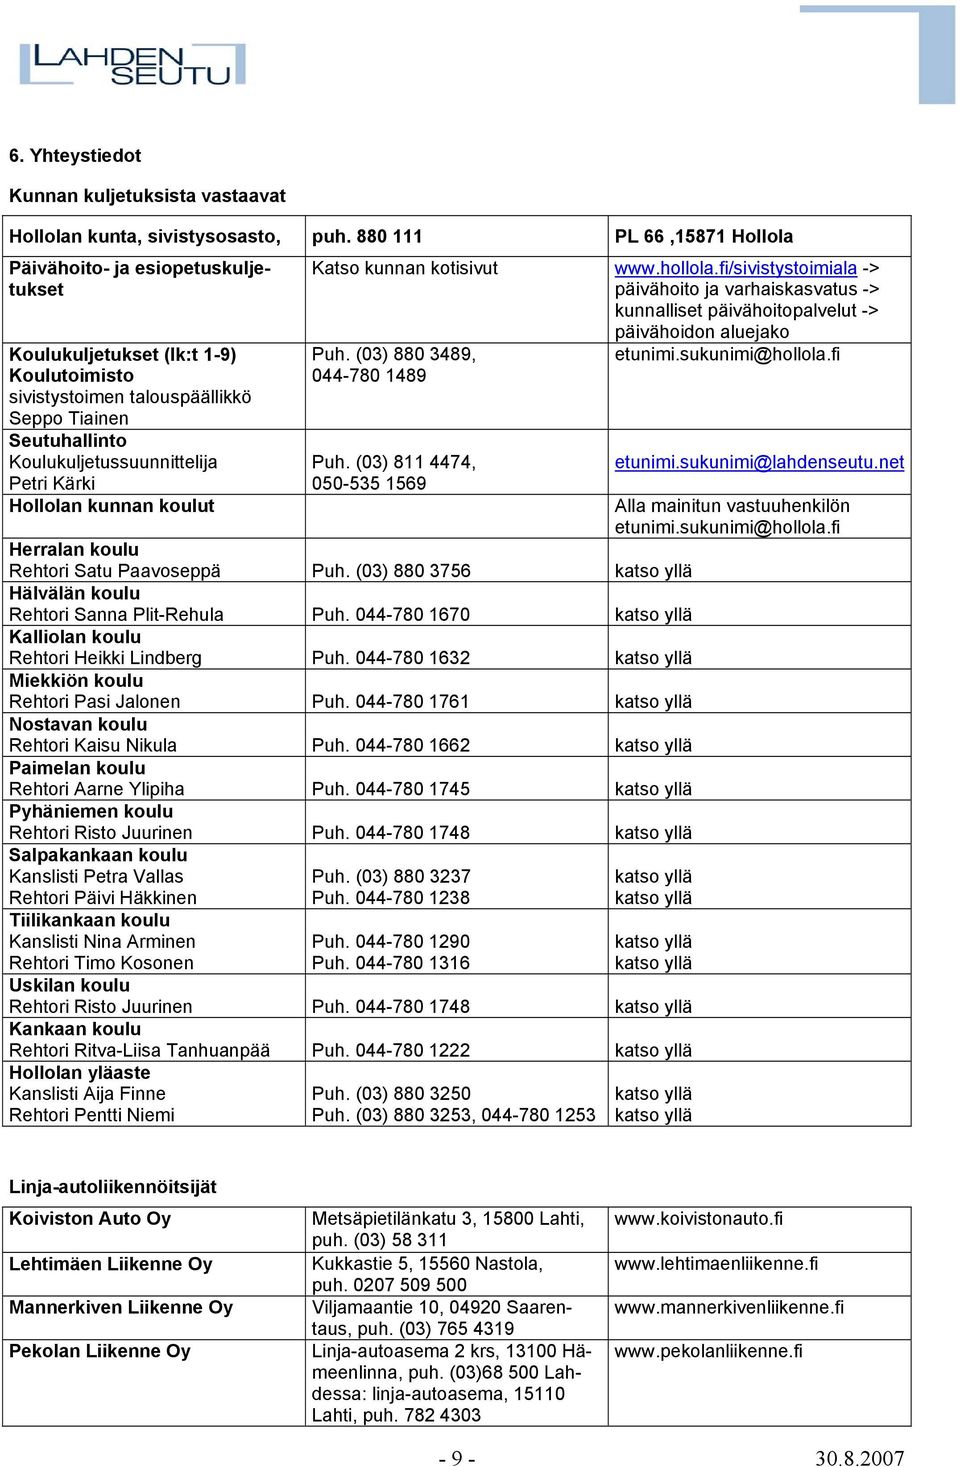 Kärki Hollolan kunnan koulut Katso kunnan kotisivut www.hollola.fi/sivistystoimiala -> päivähoito ja varhaiskasvatus -> kunnalliset päivähoitopalvelut -> päivähoidon aluejako Puh.